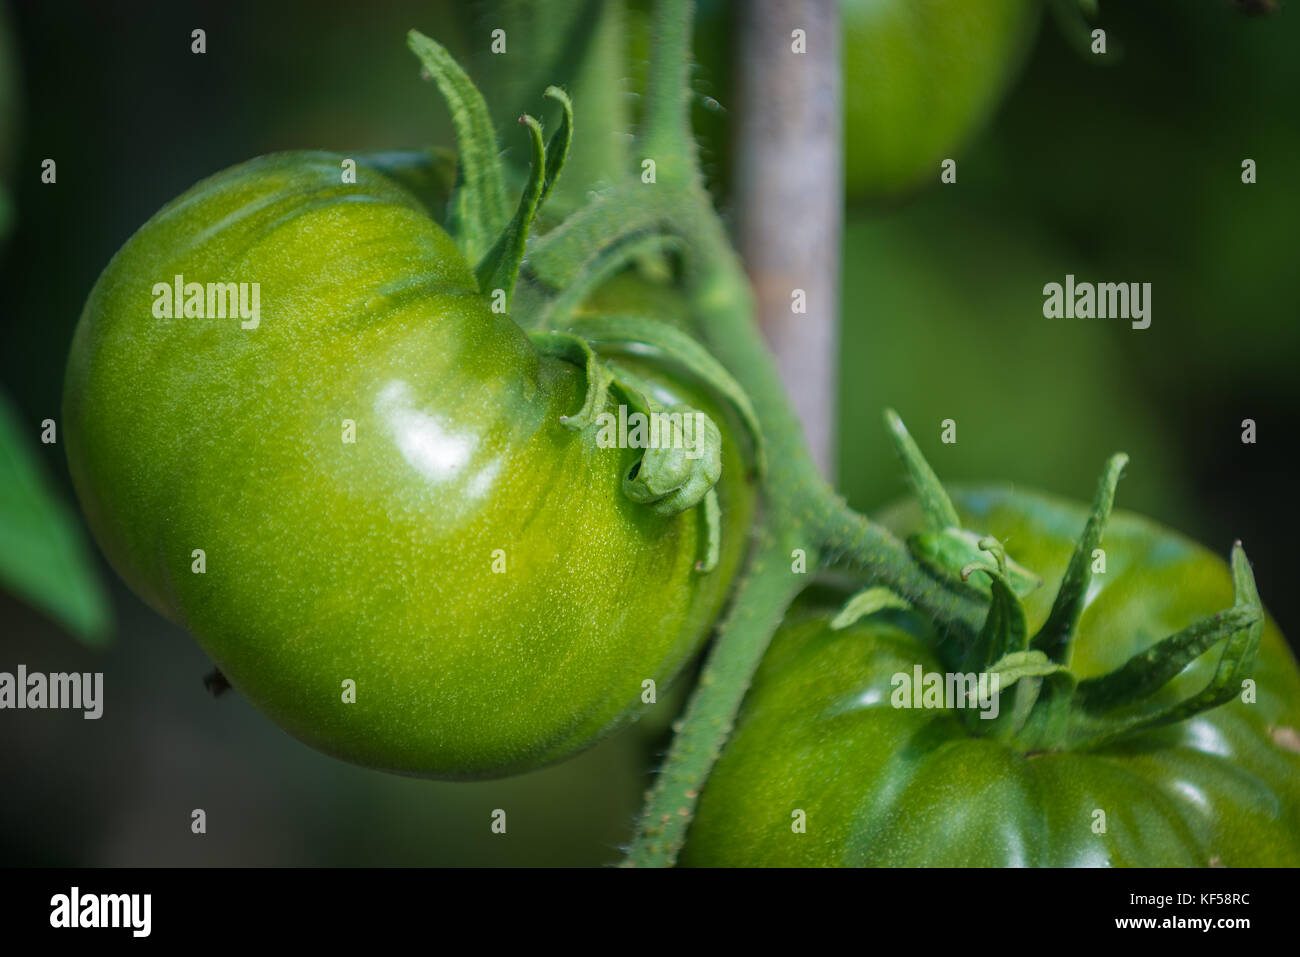 Tomatoes, fruit of the plant Solanum lycopersicum in Kew Botanic Gardens, London, United Kingdom Stock Photo